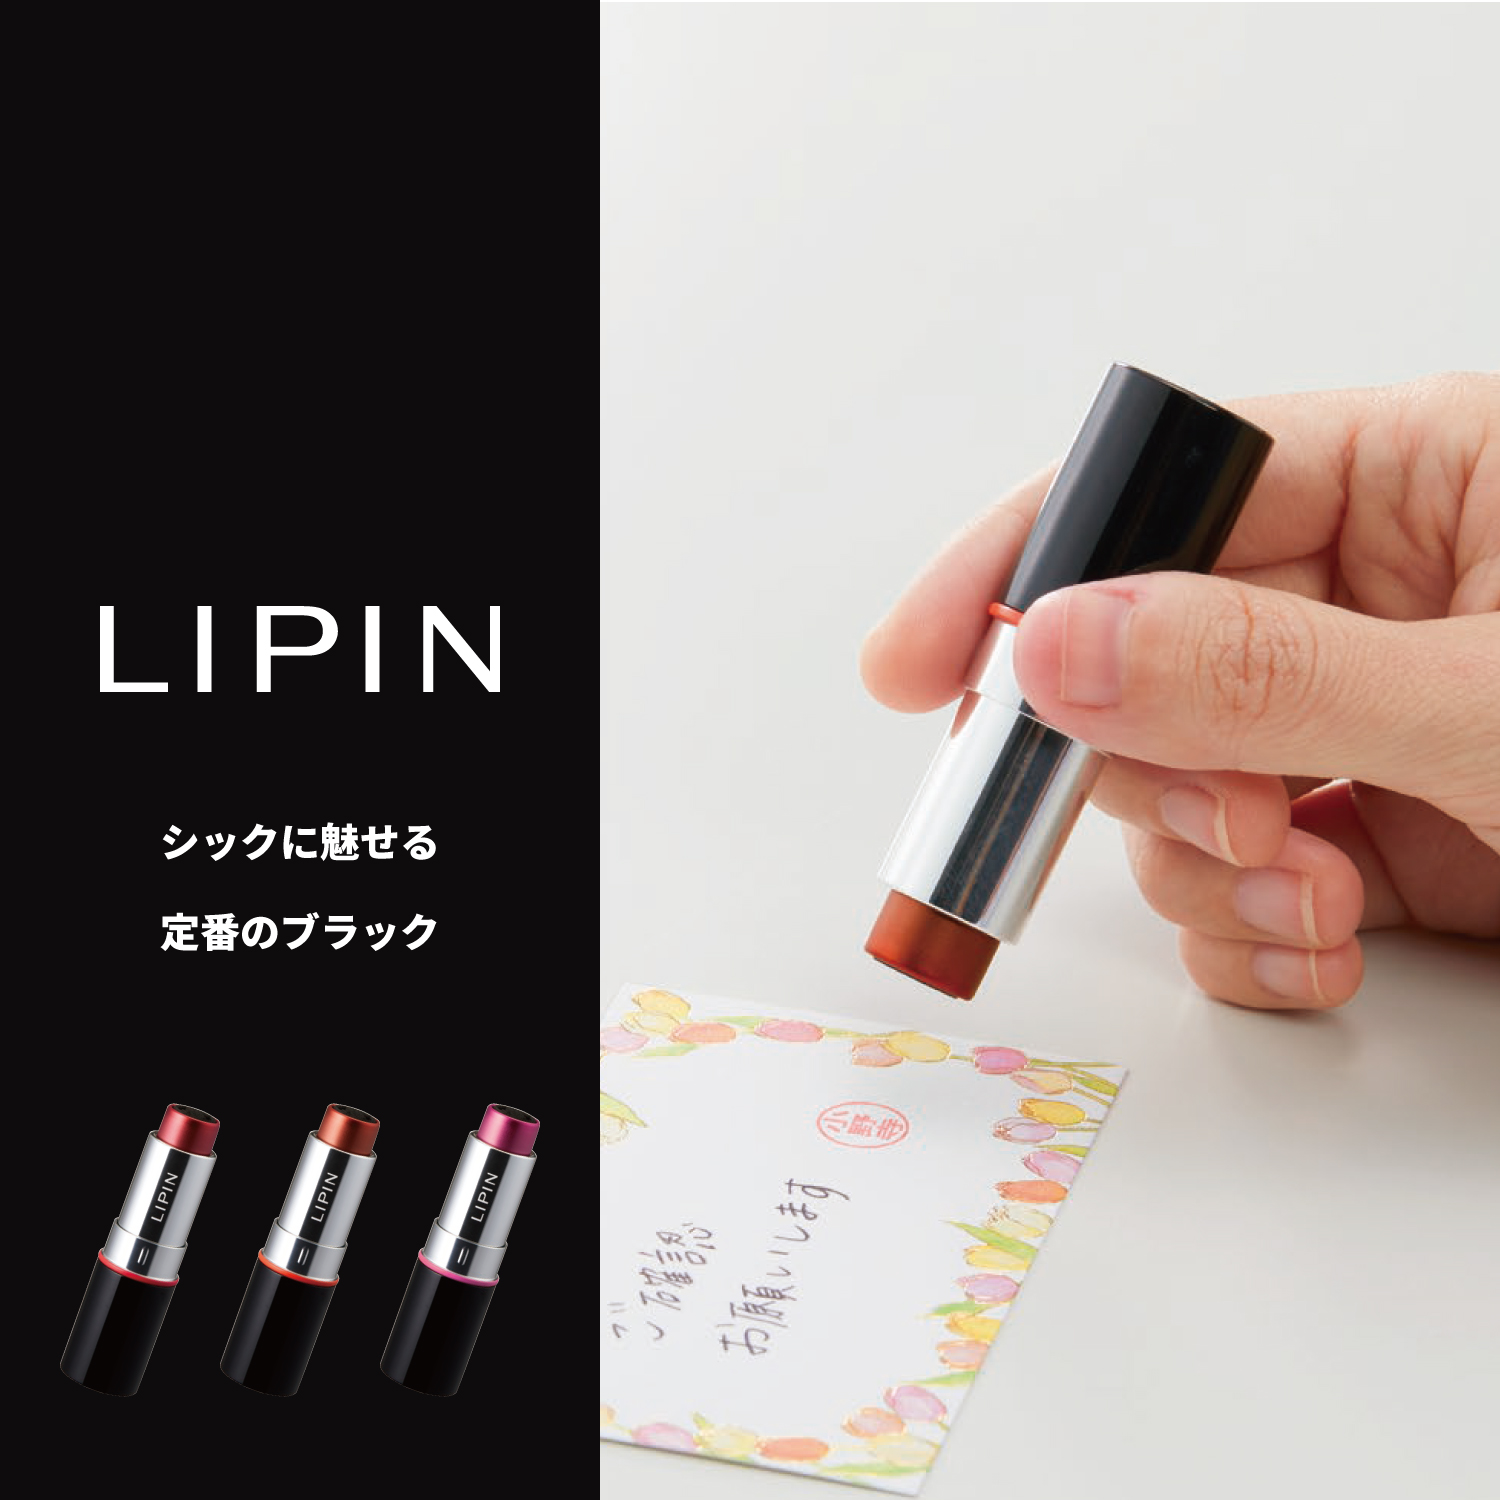 LIPIN+専用補充インキセット【本体色:ピンクゴールド/インキ色: ルビーレッド】_6